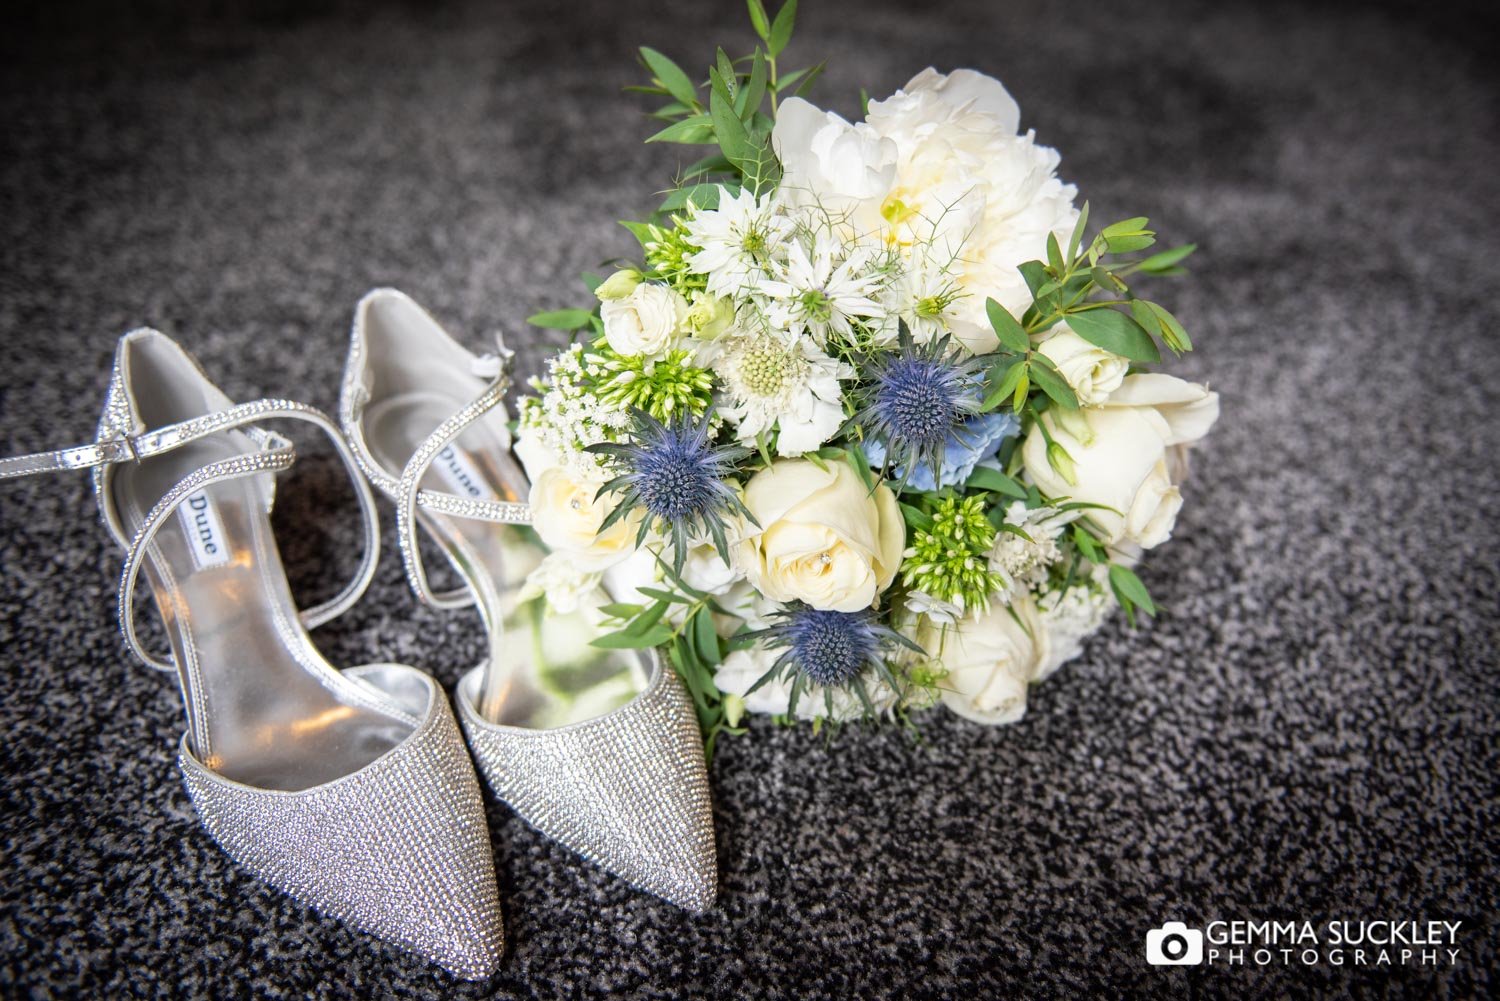 dunes bridal shoes next to the bouquet 